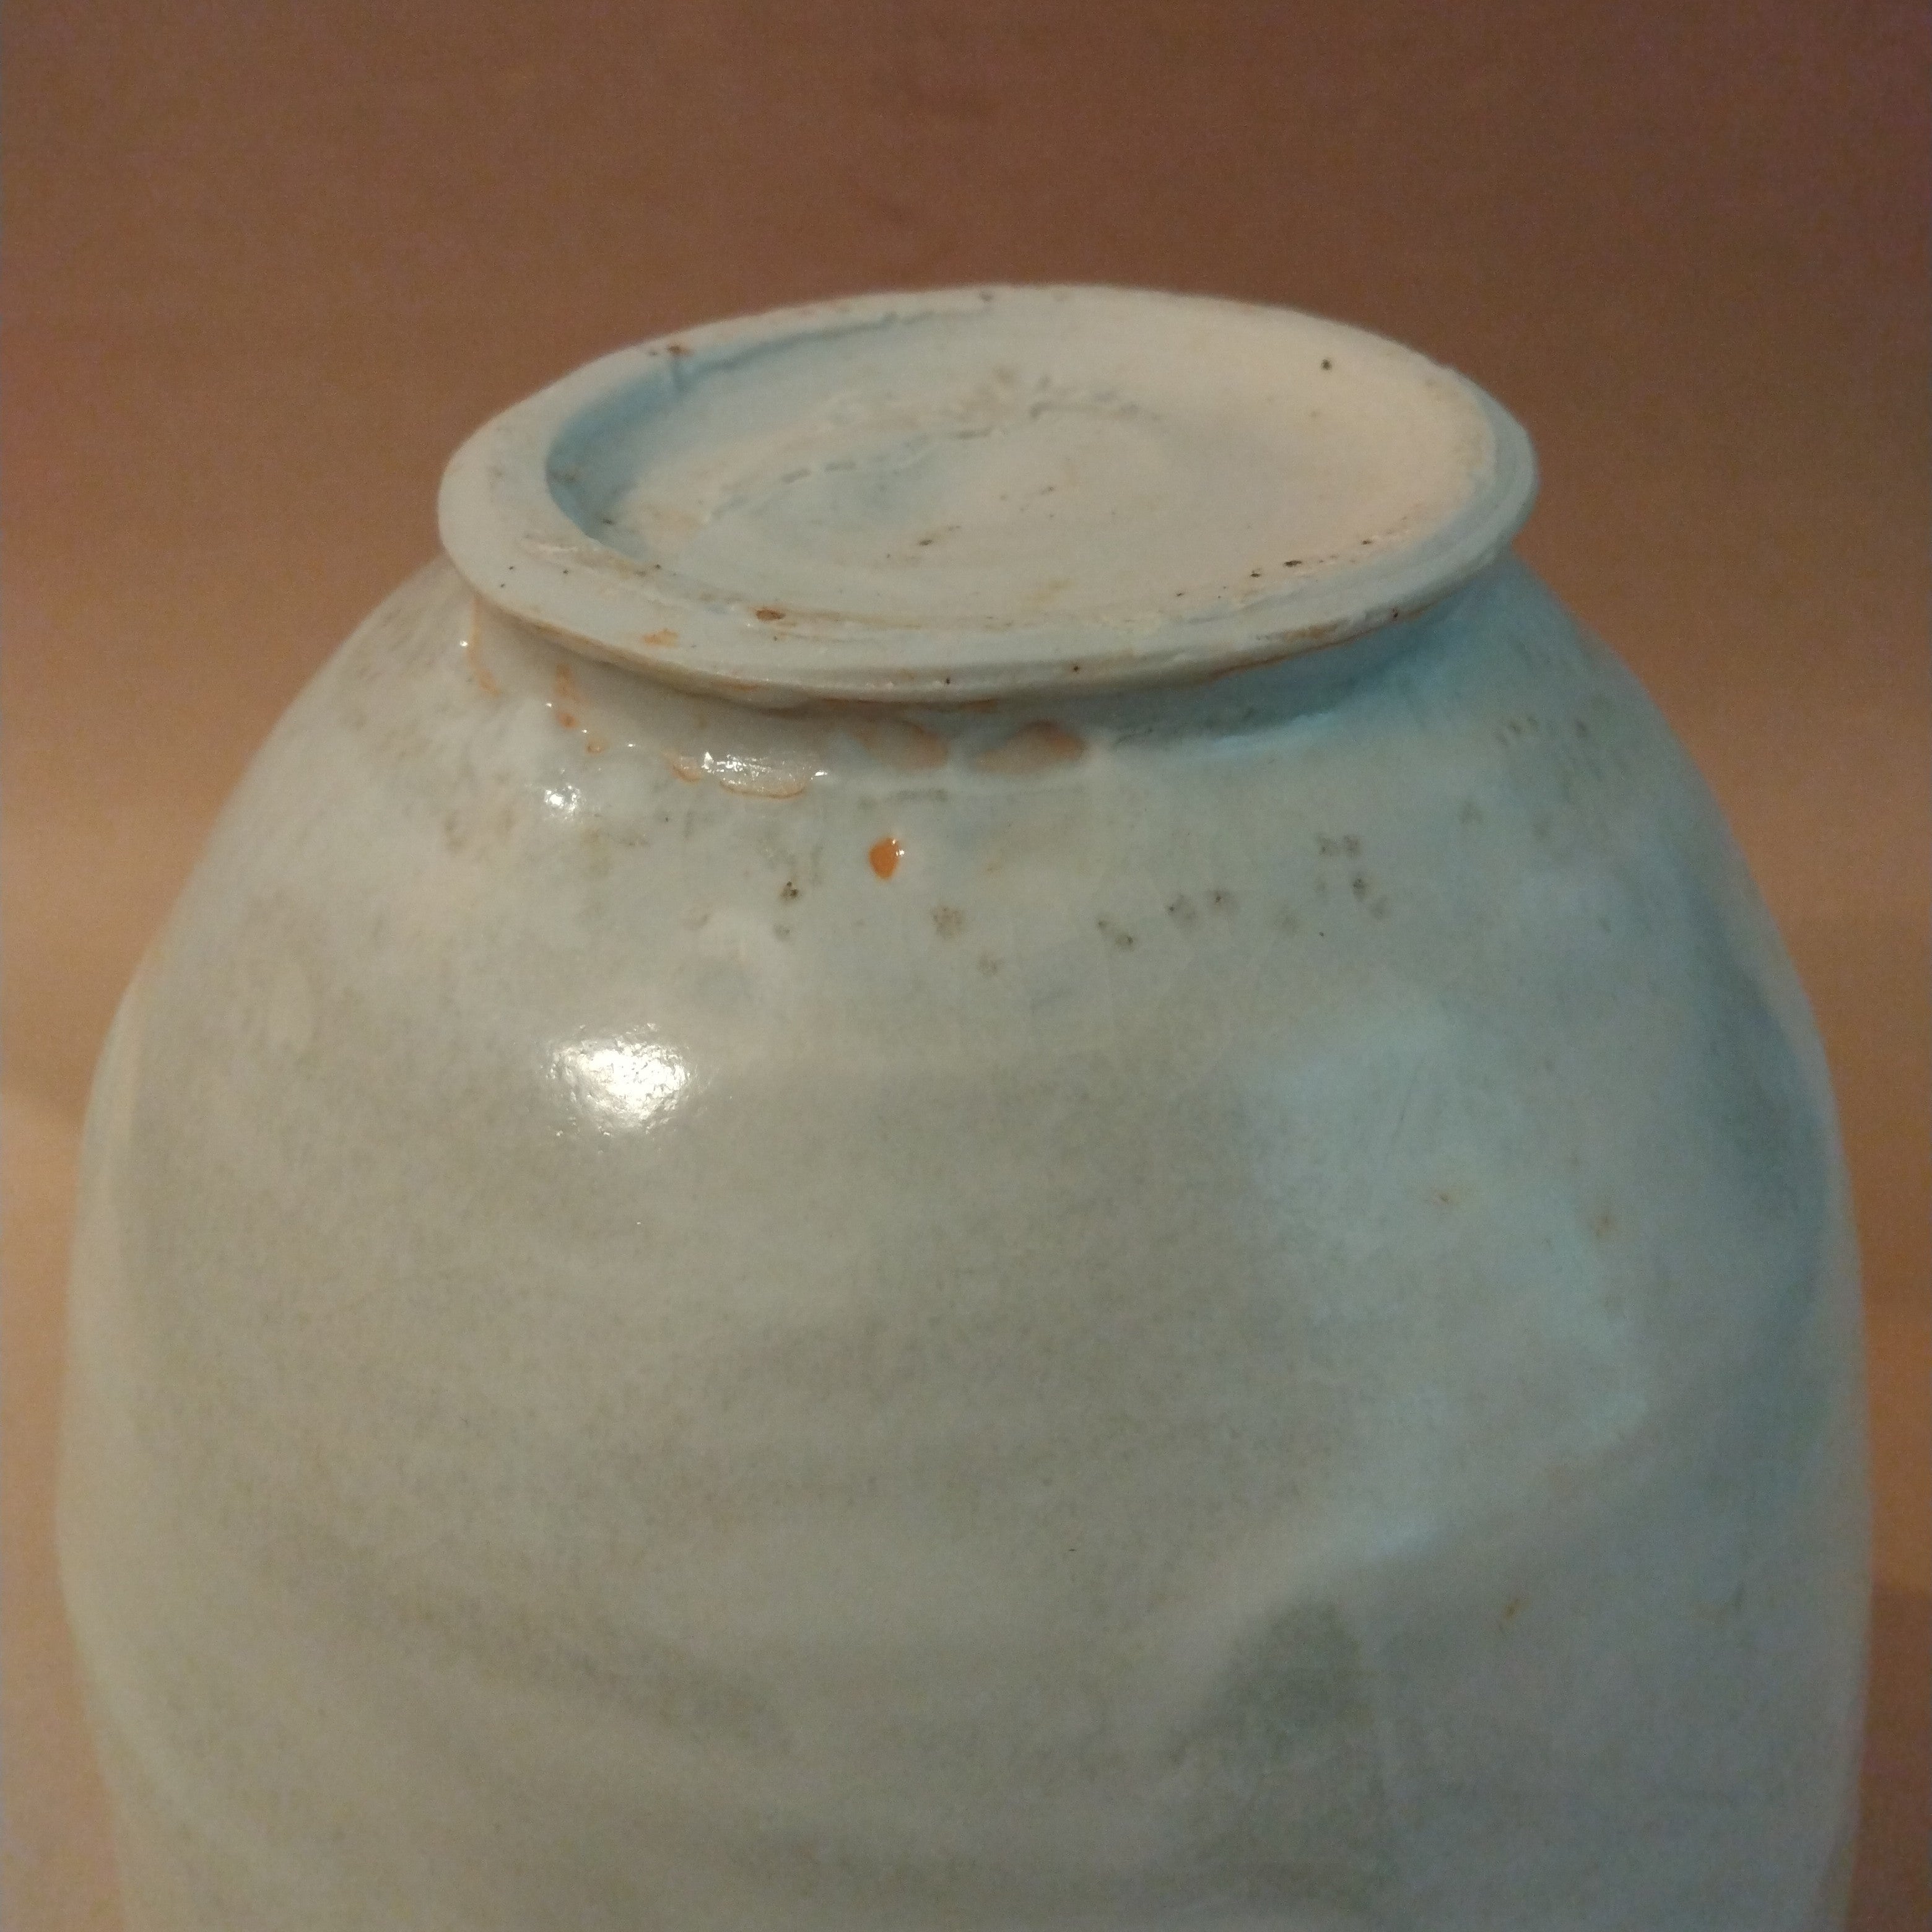 White Shino Glaze Vase by Sachiko Furuya